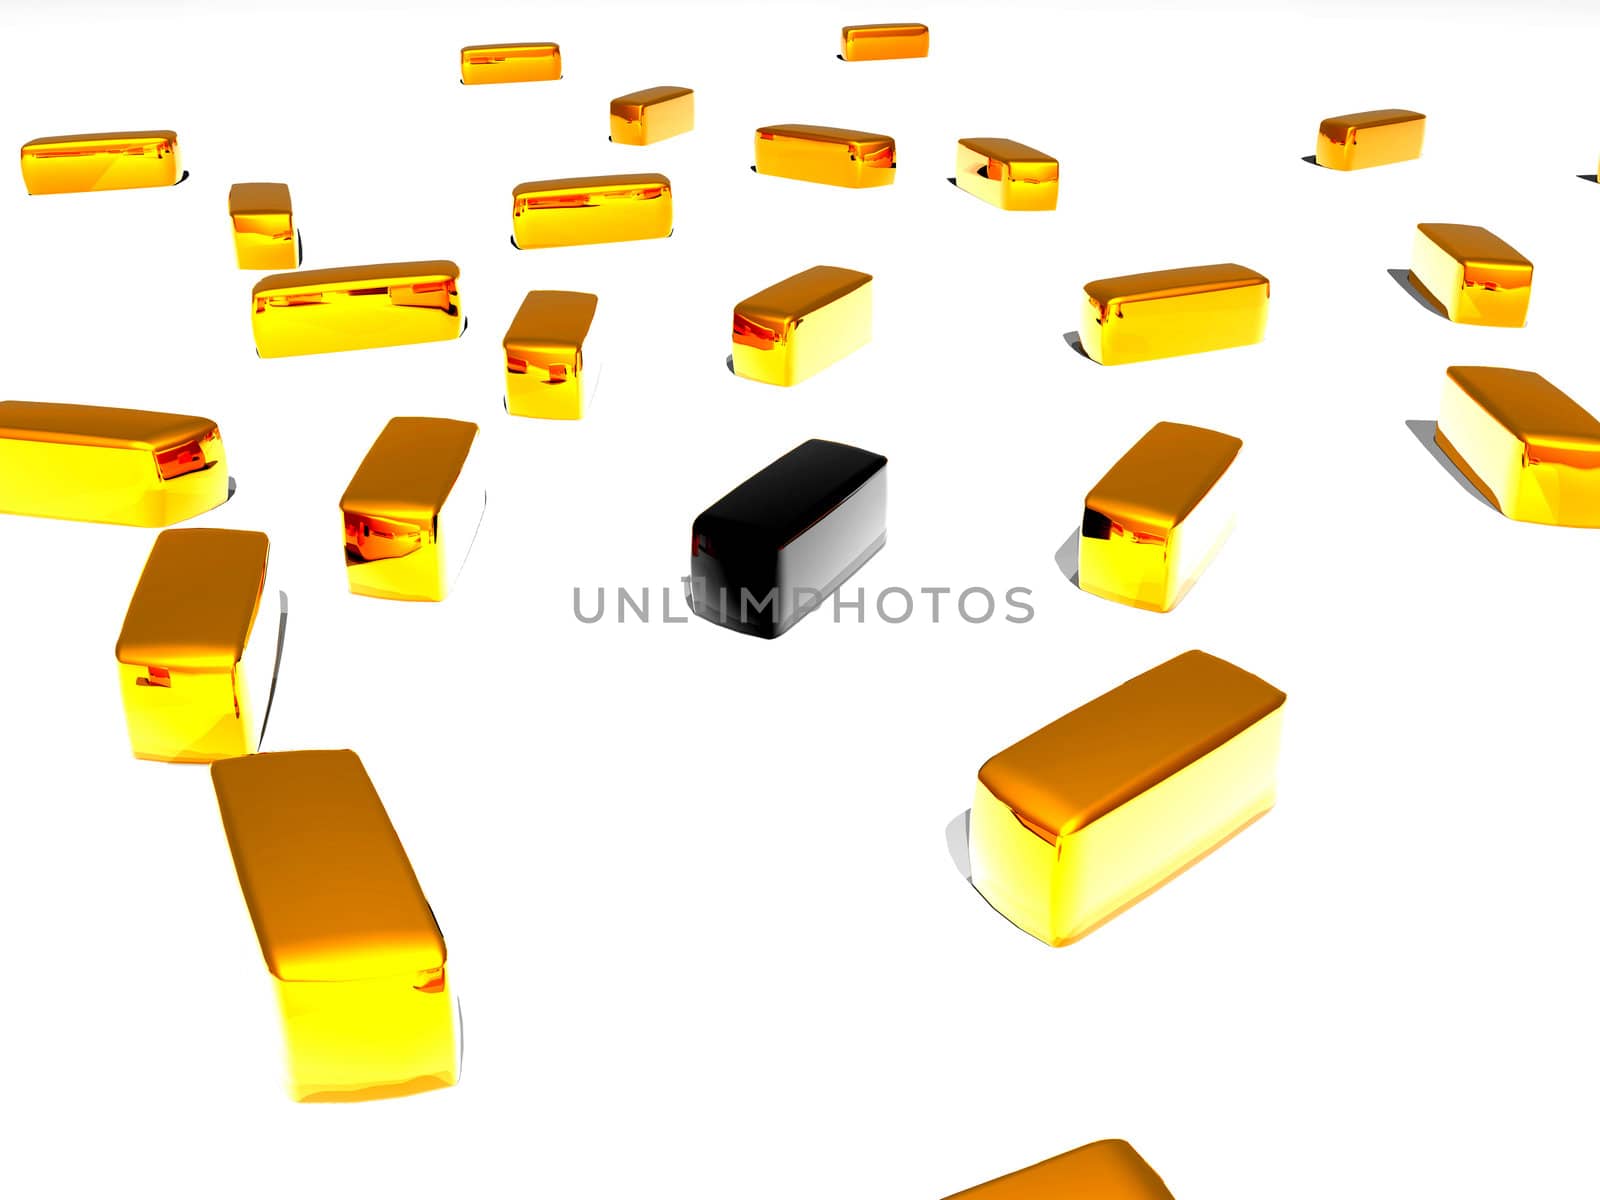 Unique black gold 